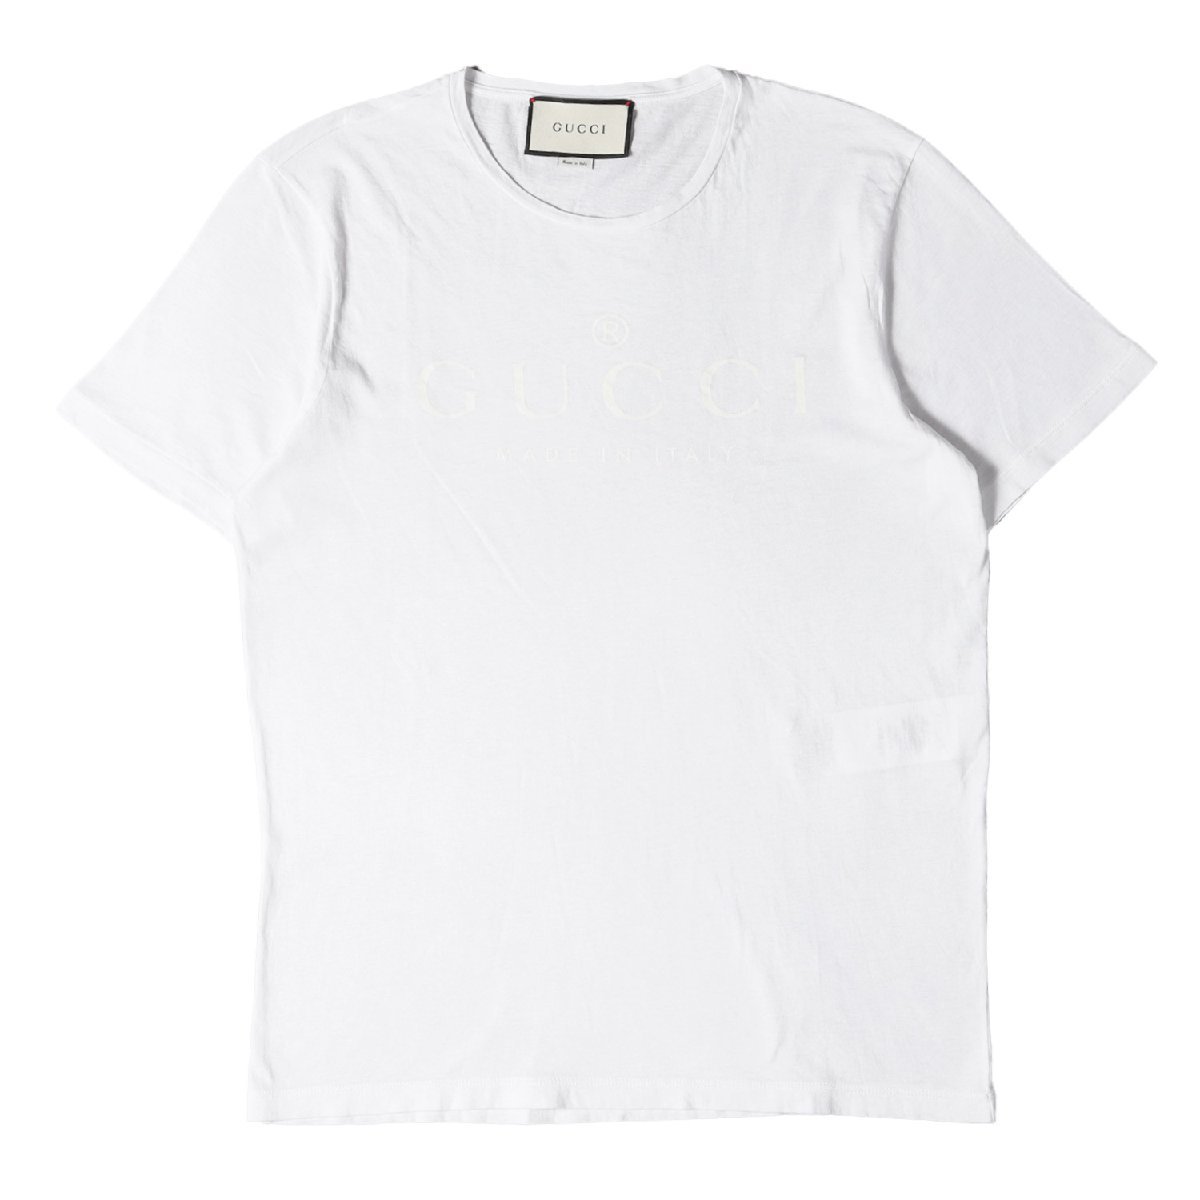 GUCCI グッチ Tシャツ ブランドロゴ クルーネックTシャツ ホワイト 白 